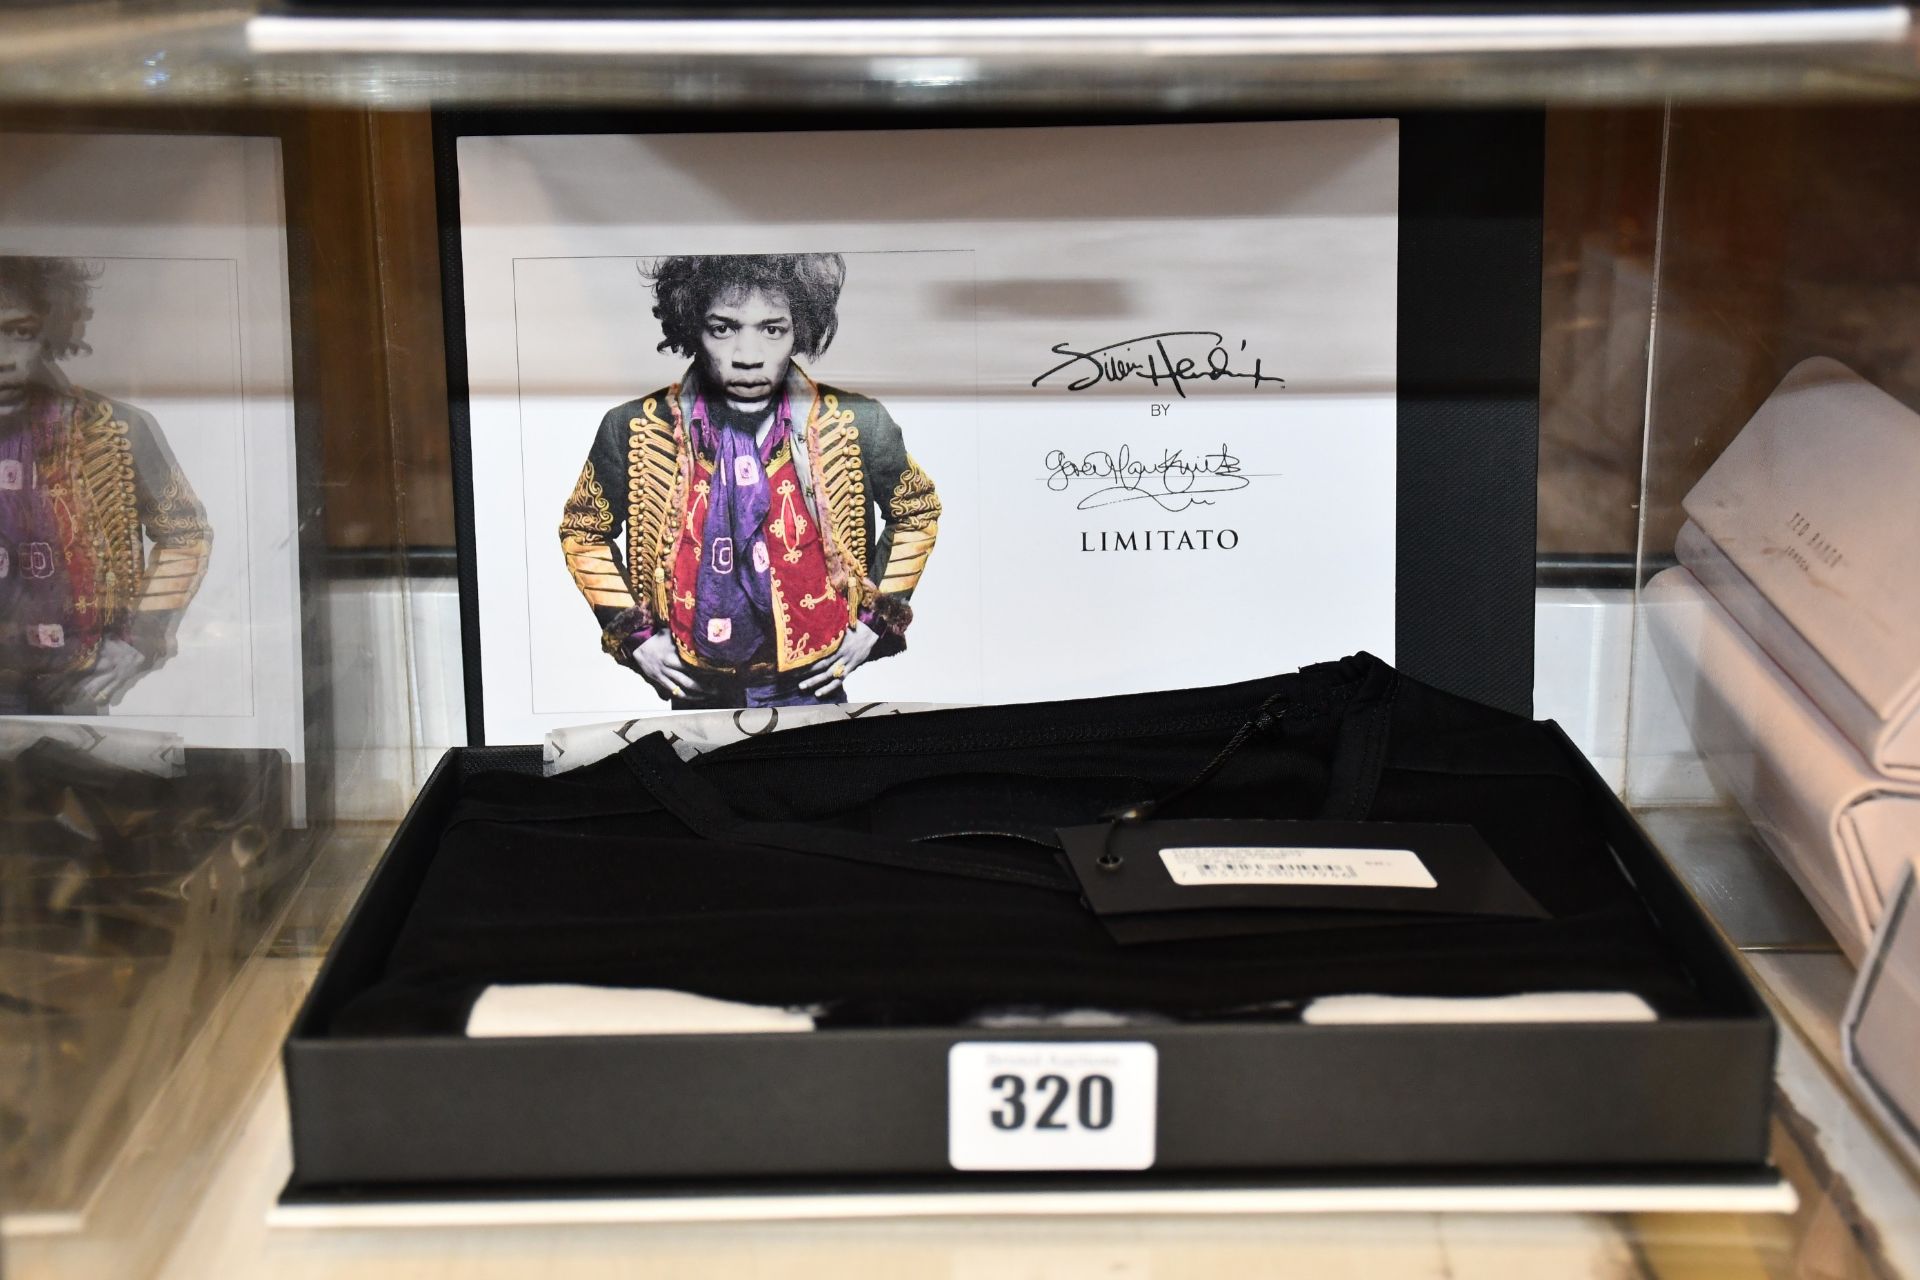 An as new Limitato Gered Jimi (Hendrix) T-shirt in presentation box (L).